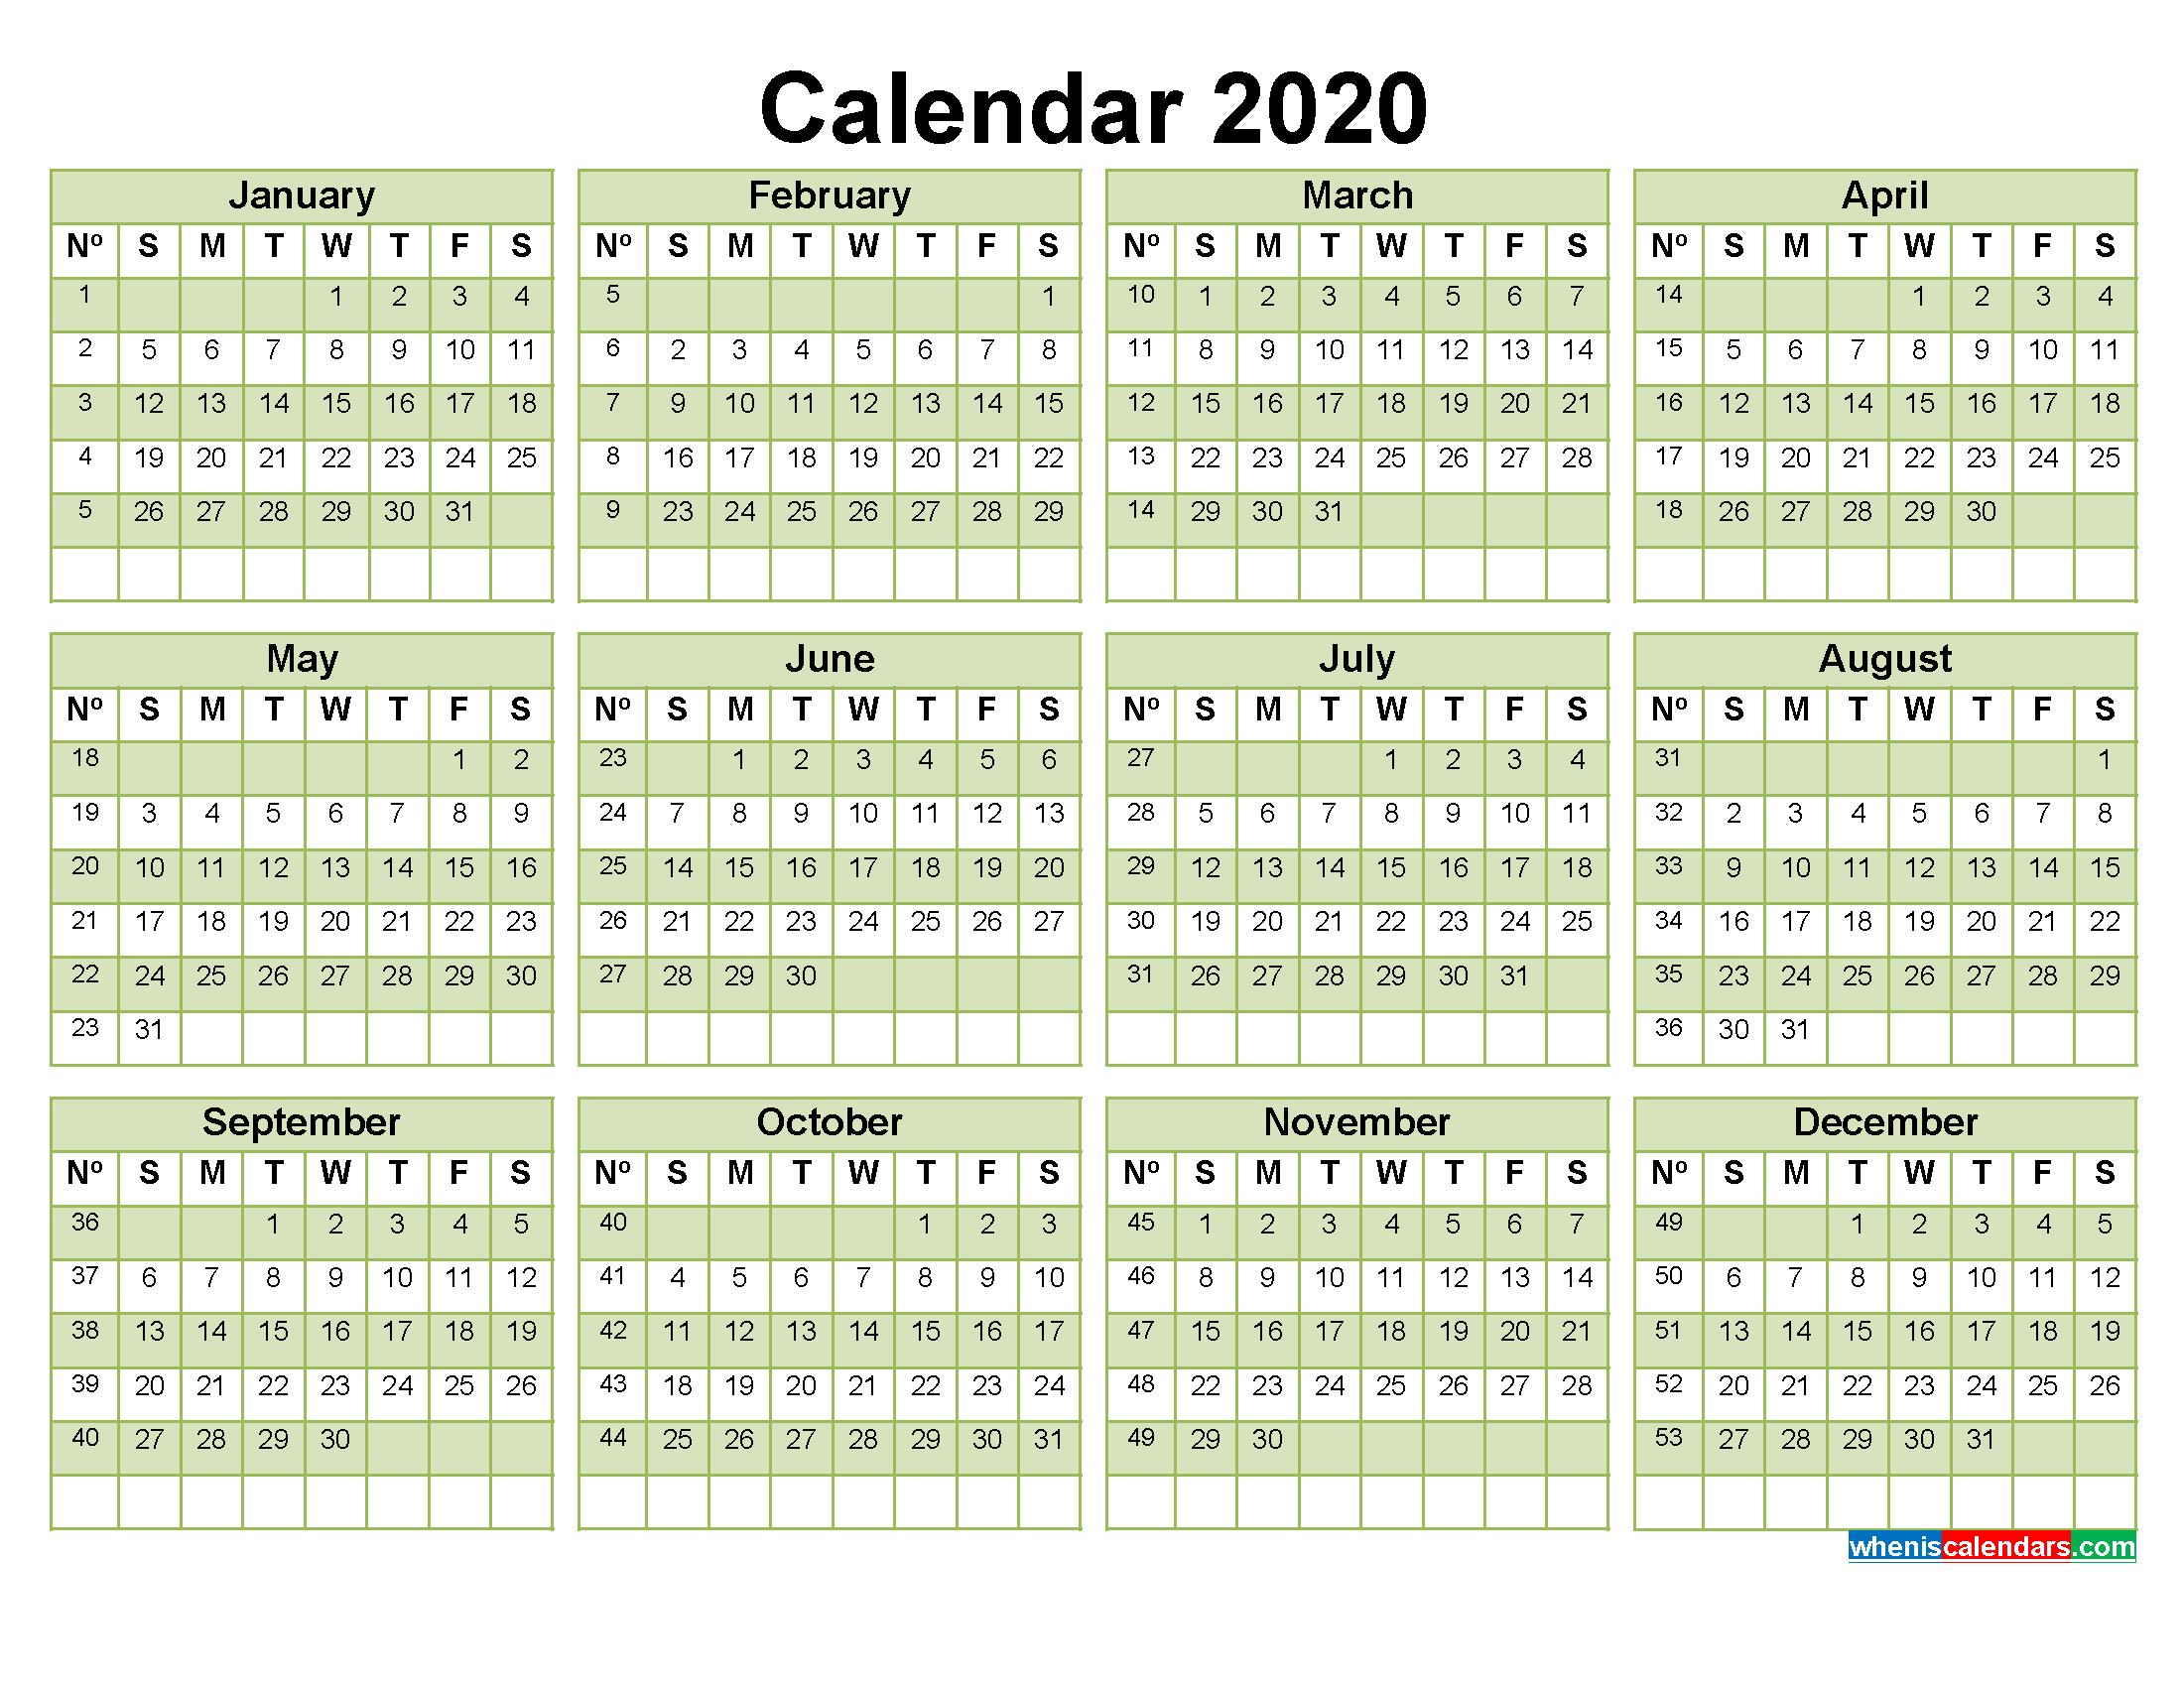 printable-calendar-with-week-numbers-2020-word-pdf